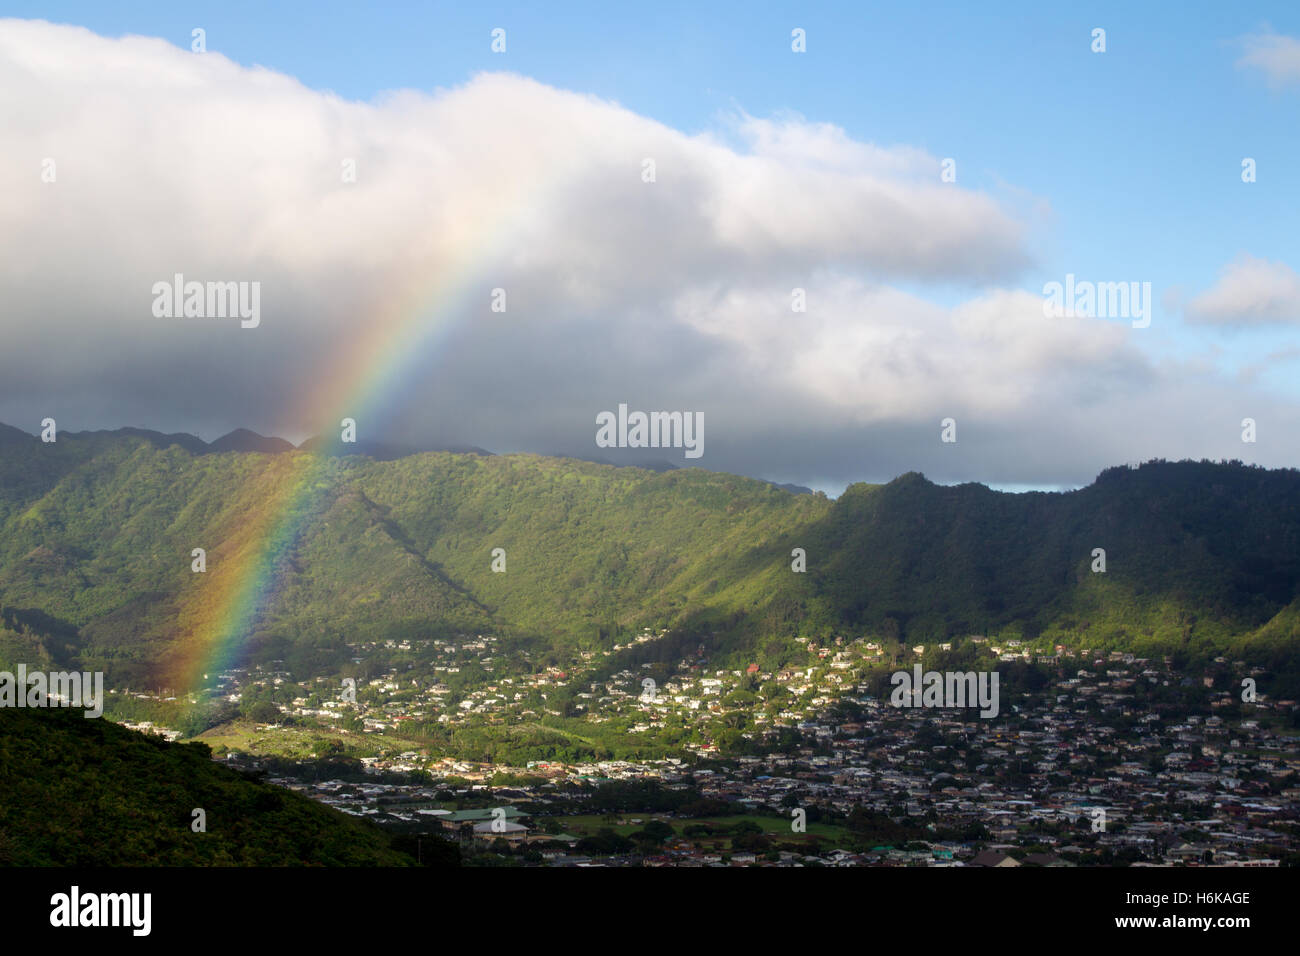 Regenbogen in einem grünen Tal in der Nähe von Honolulu auf Oahu, Hawaii, USA. Stockfoto